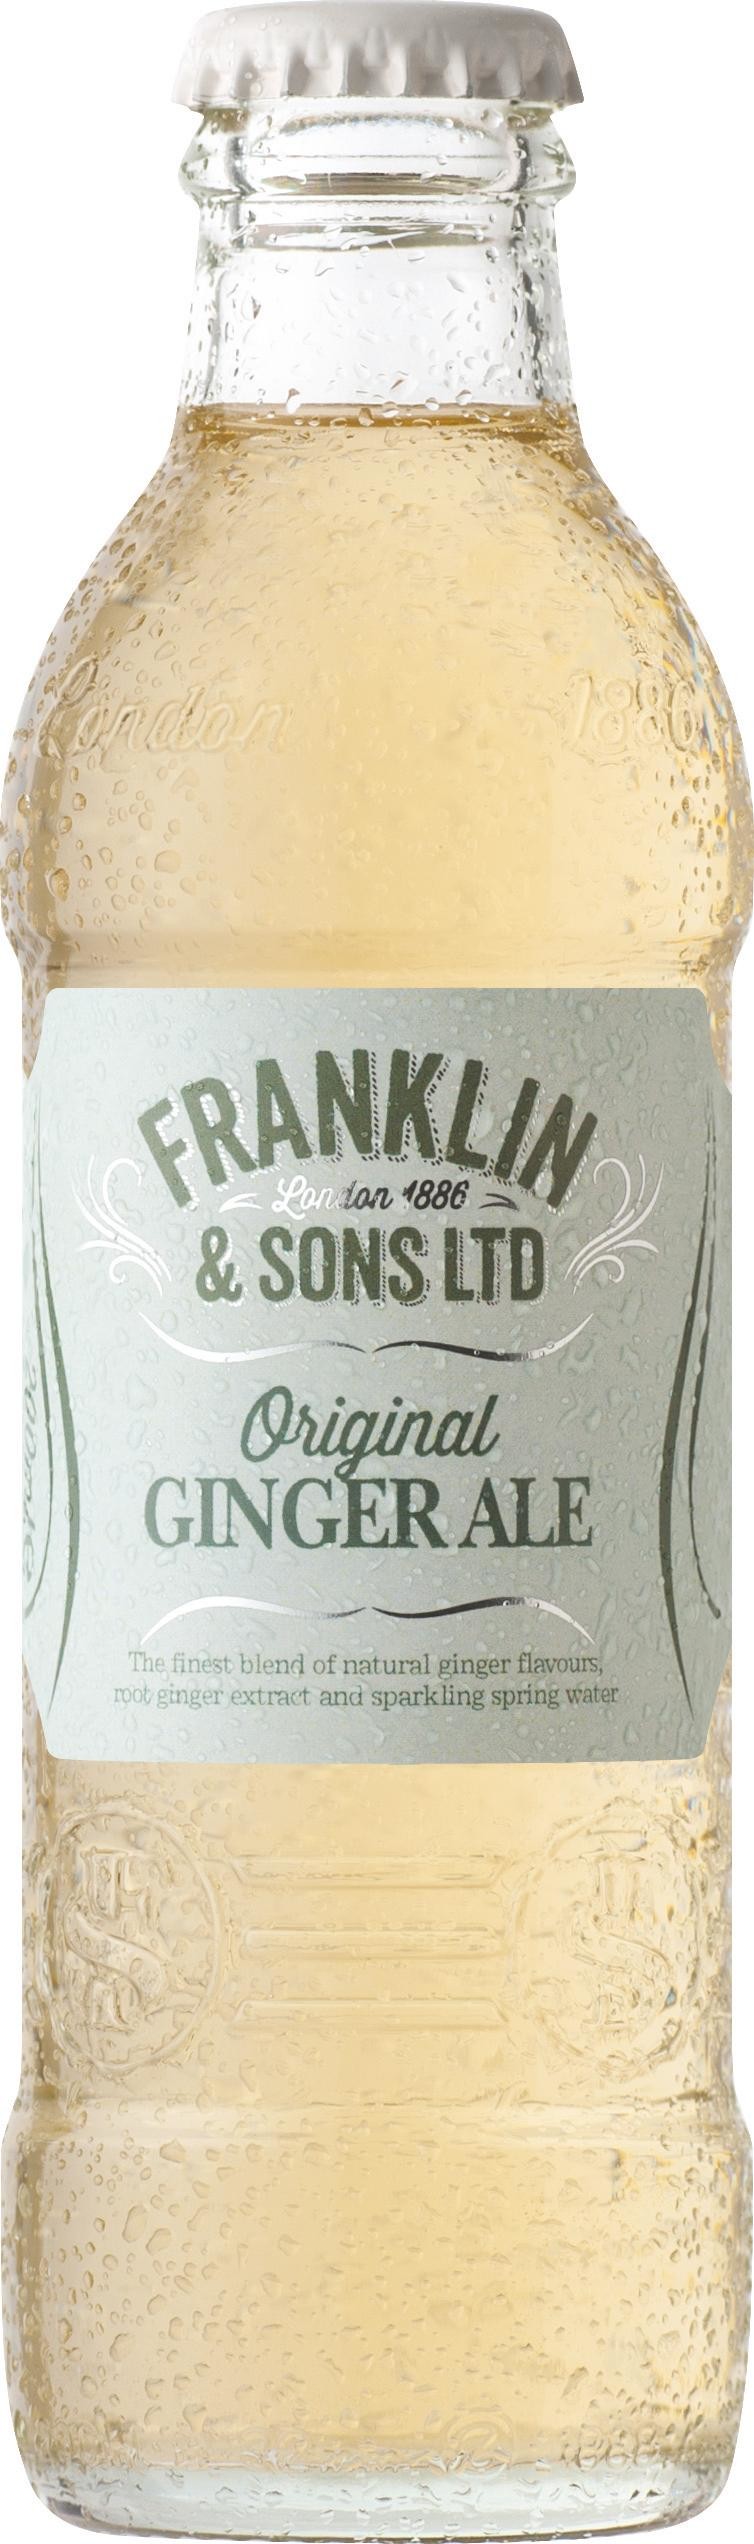 Franklin & Sons Original Ginger Ale 200ml